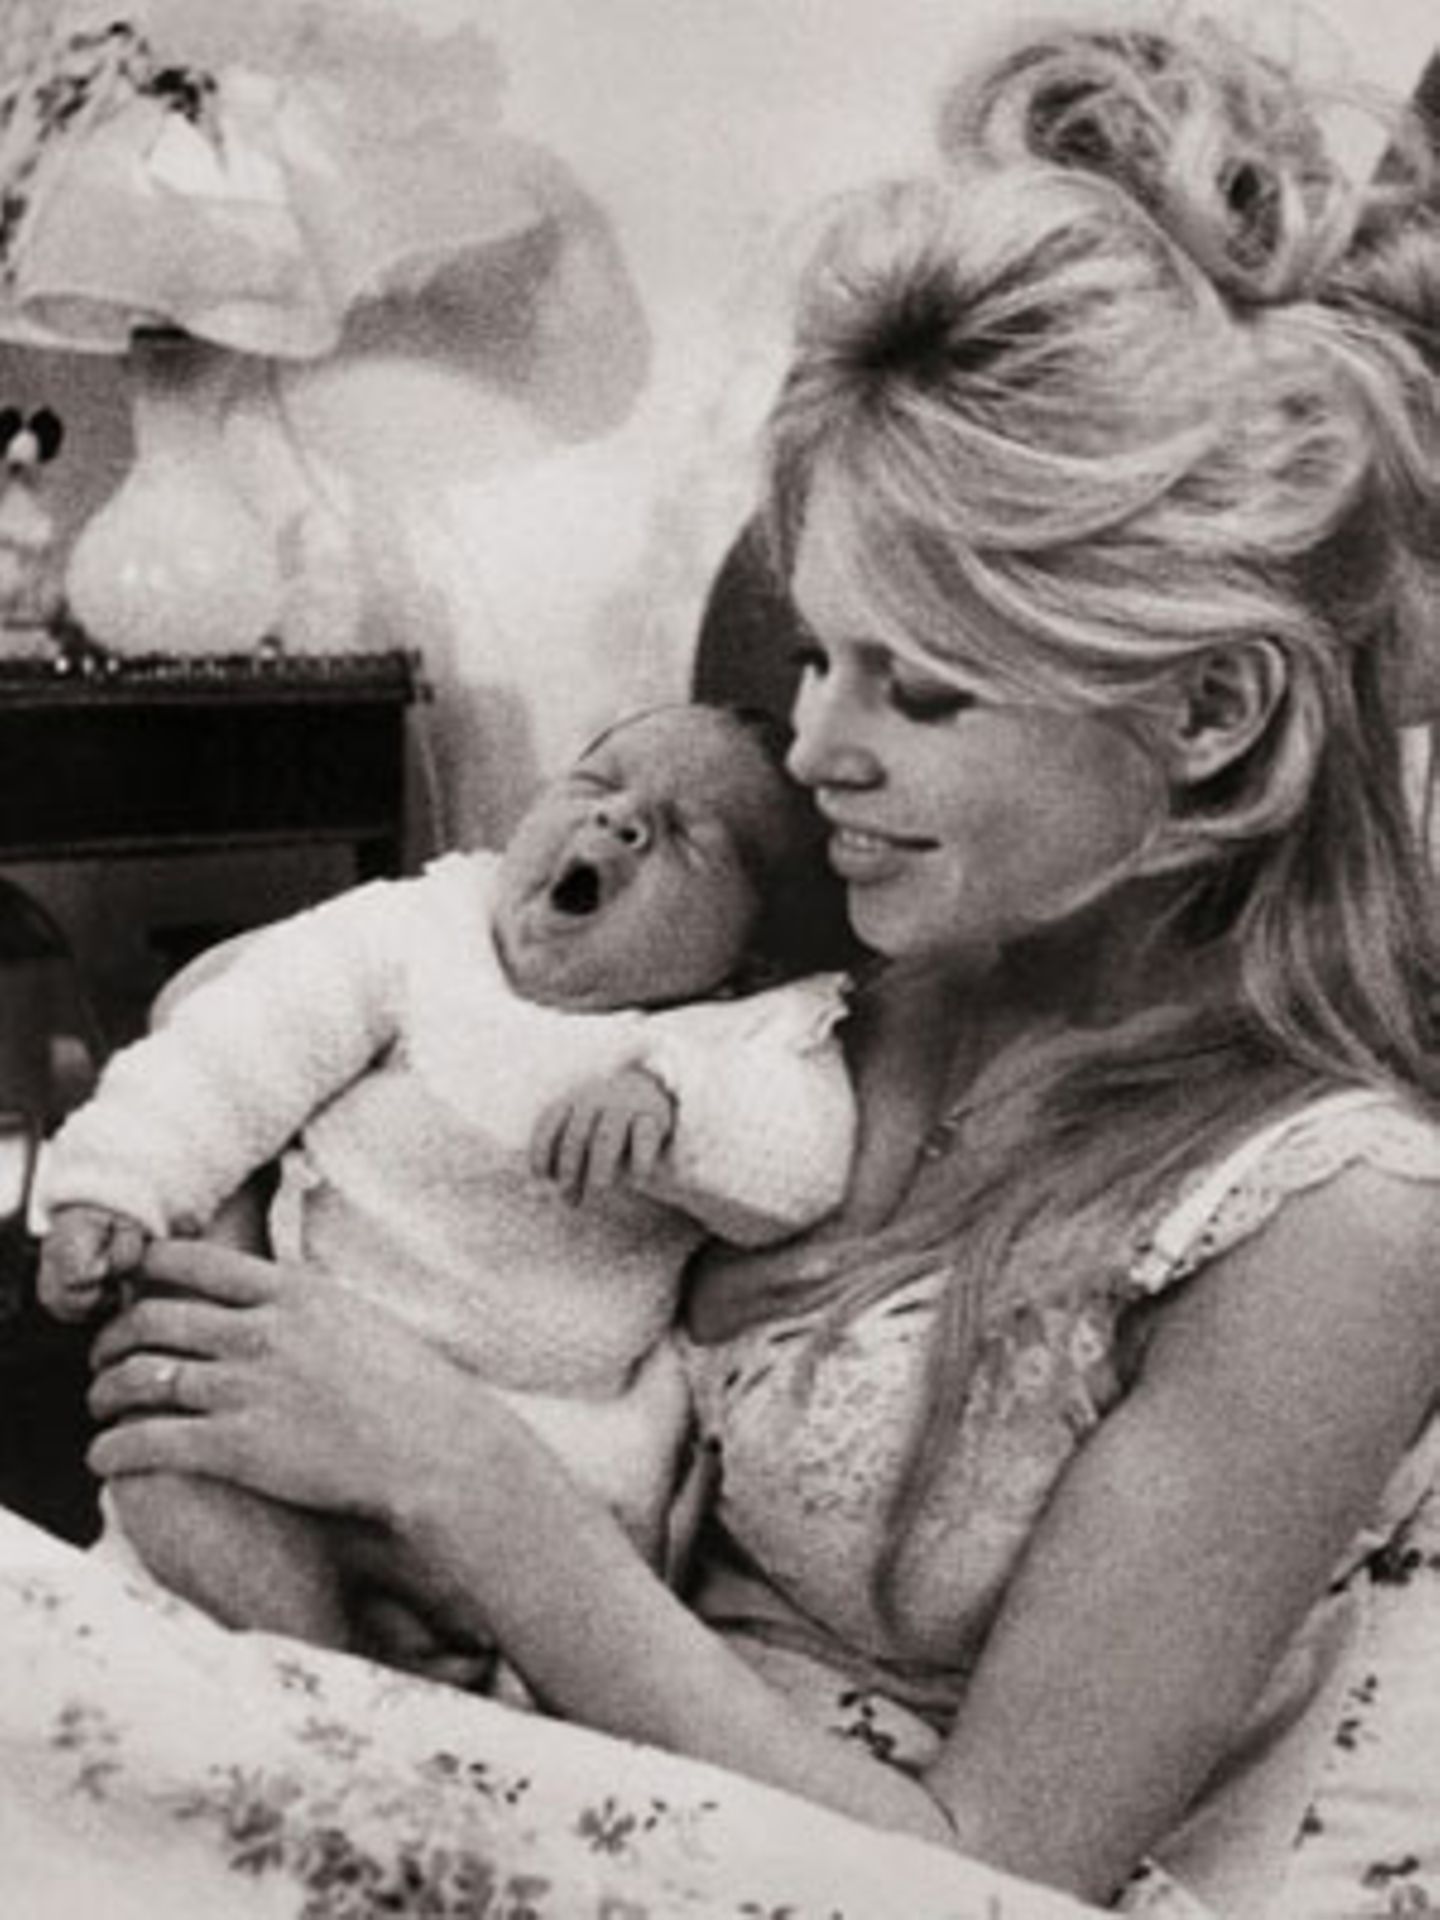 Ihr erstes und einziges Kind, Nicolas-Jacques Charrier, kam am 11. Januar 1960 auf die Welt – eine Erfahrung, an der Brigitte Bardot zunächst keinen Gefallen fand. "Ich bin keine Mutter, und ich werde auch nie eine sein", sagte sie. Auf dem Foto: Brigitte Bardot mit ihrem zwei Tage alten Sohn im Januar 1960.